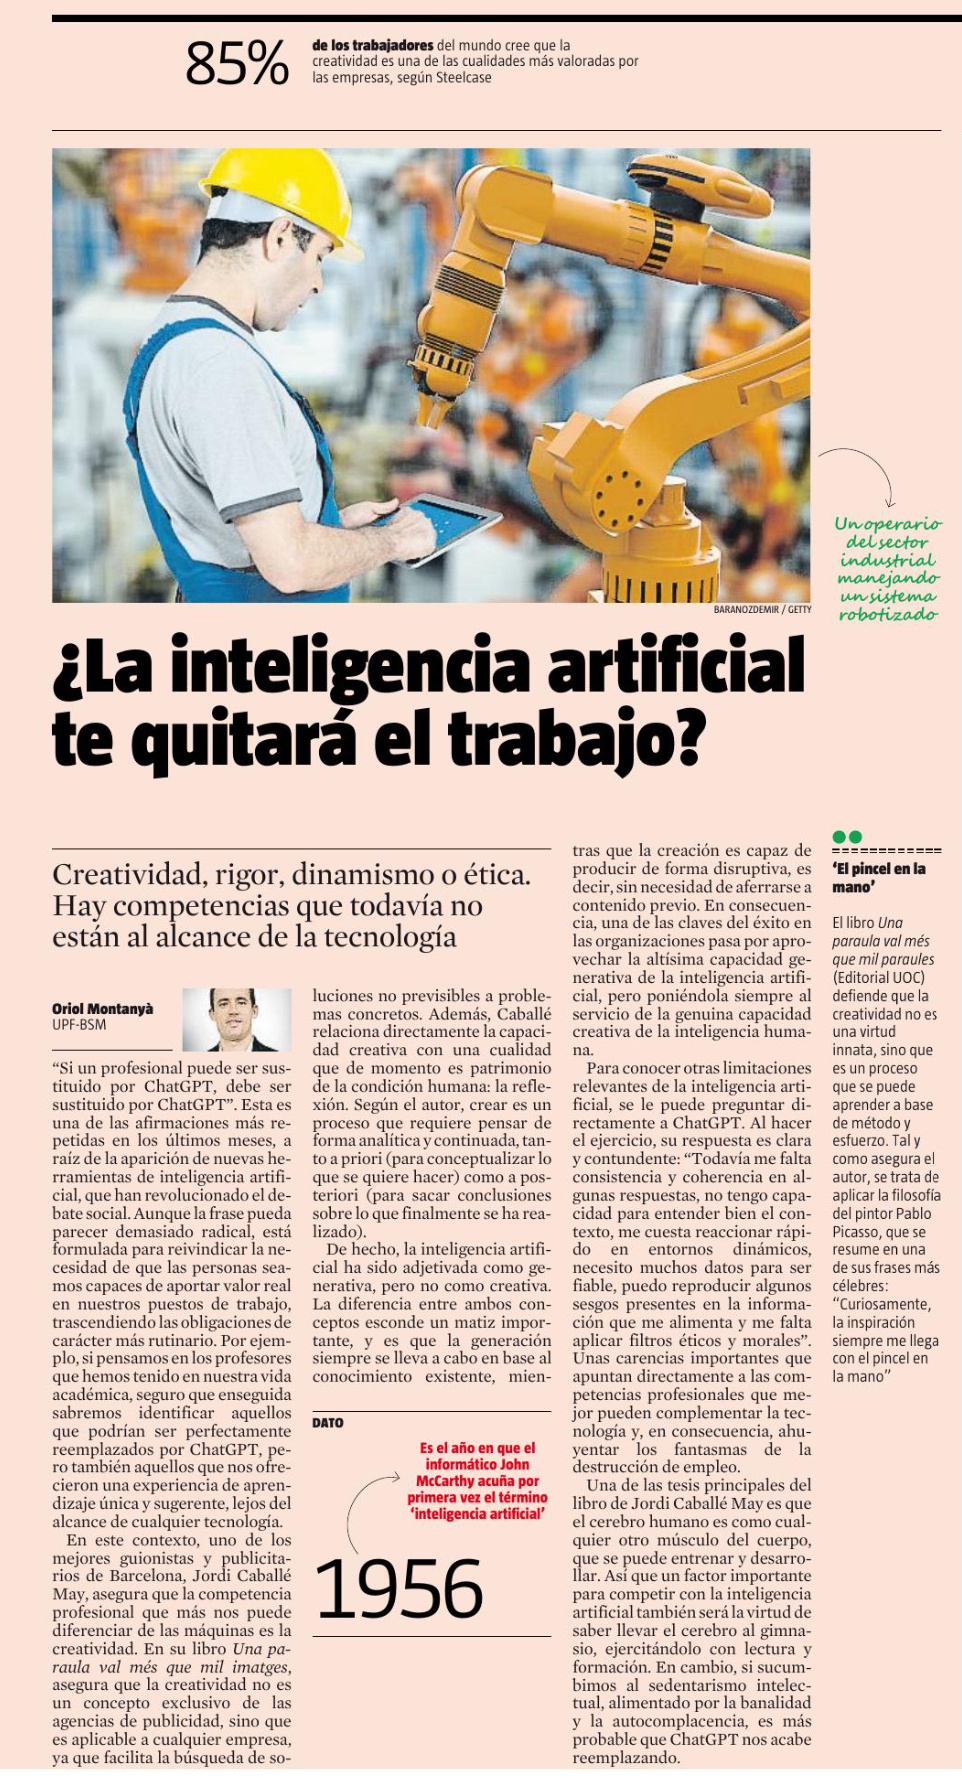 “¿La inteligencia artifical te quitará el trabajo?”. Article a La Vanguardia